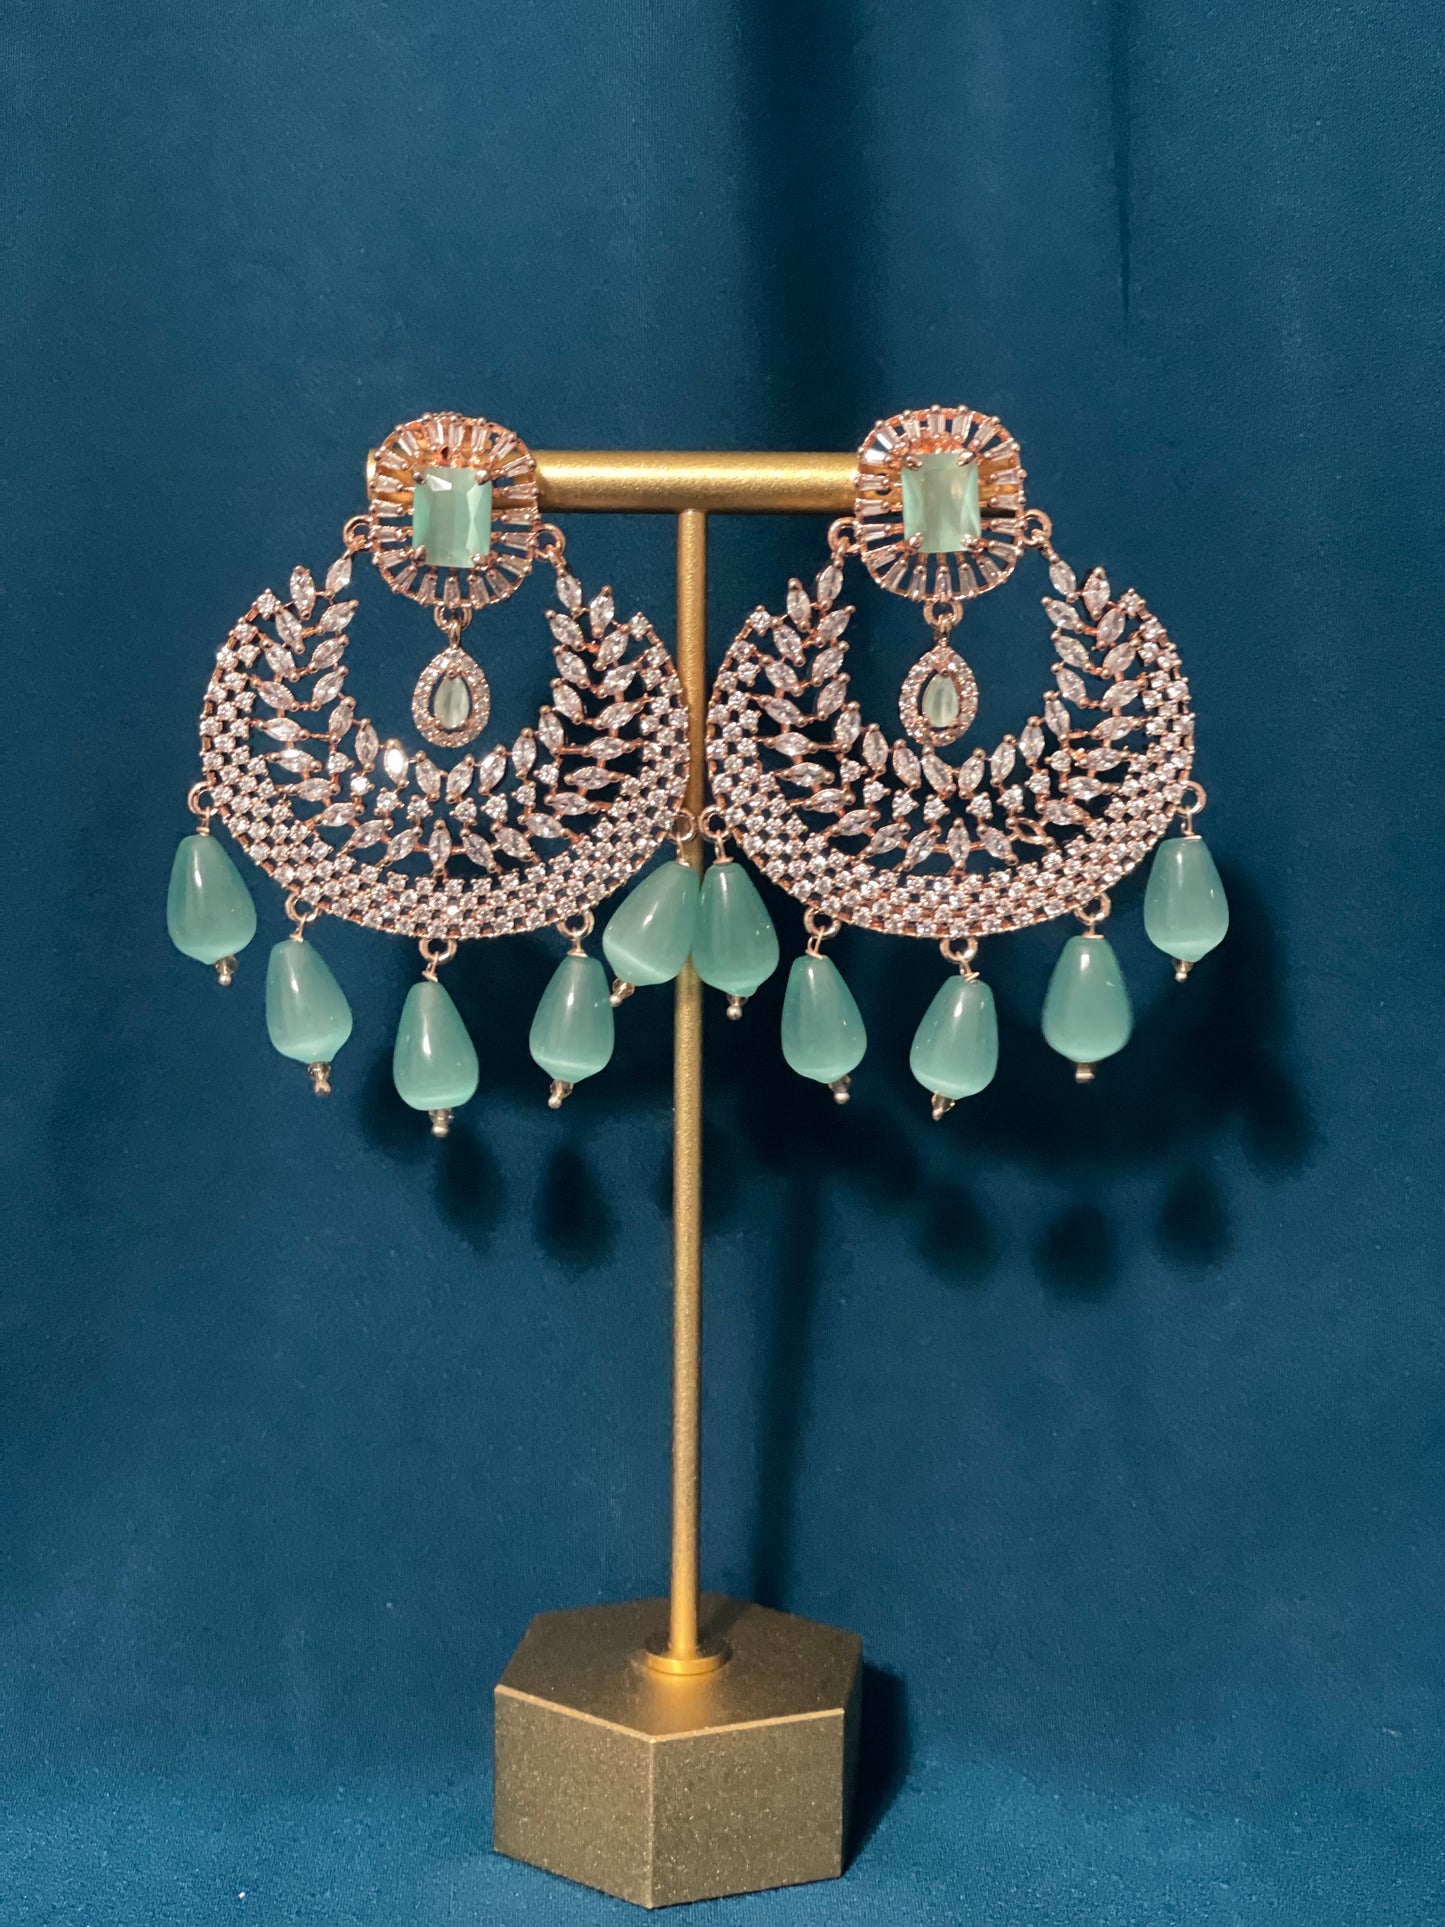 NAAZ American Diamond Earrings - Mint